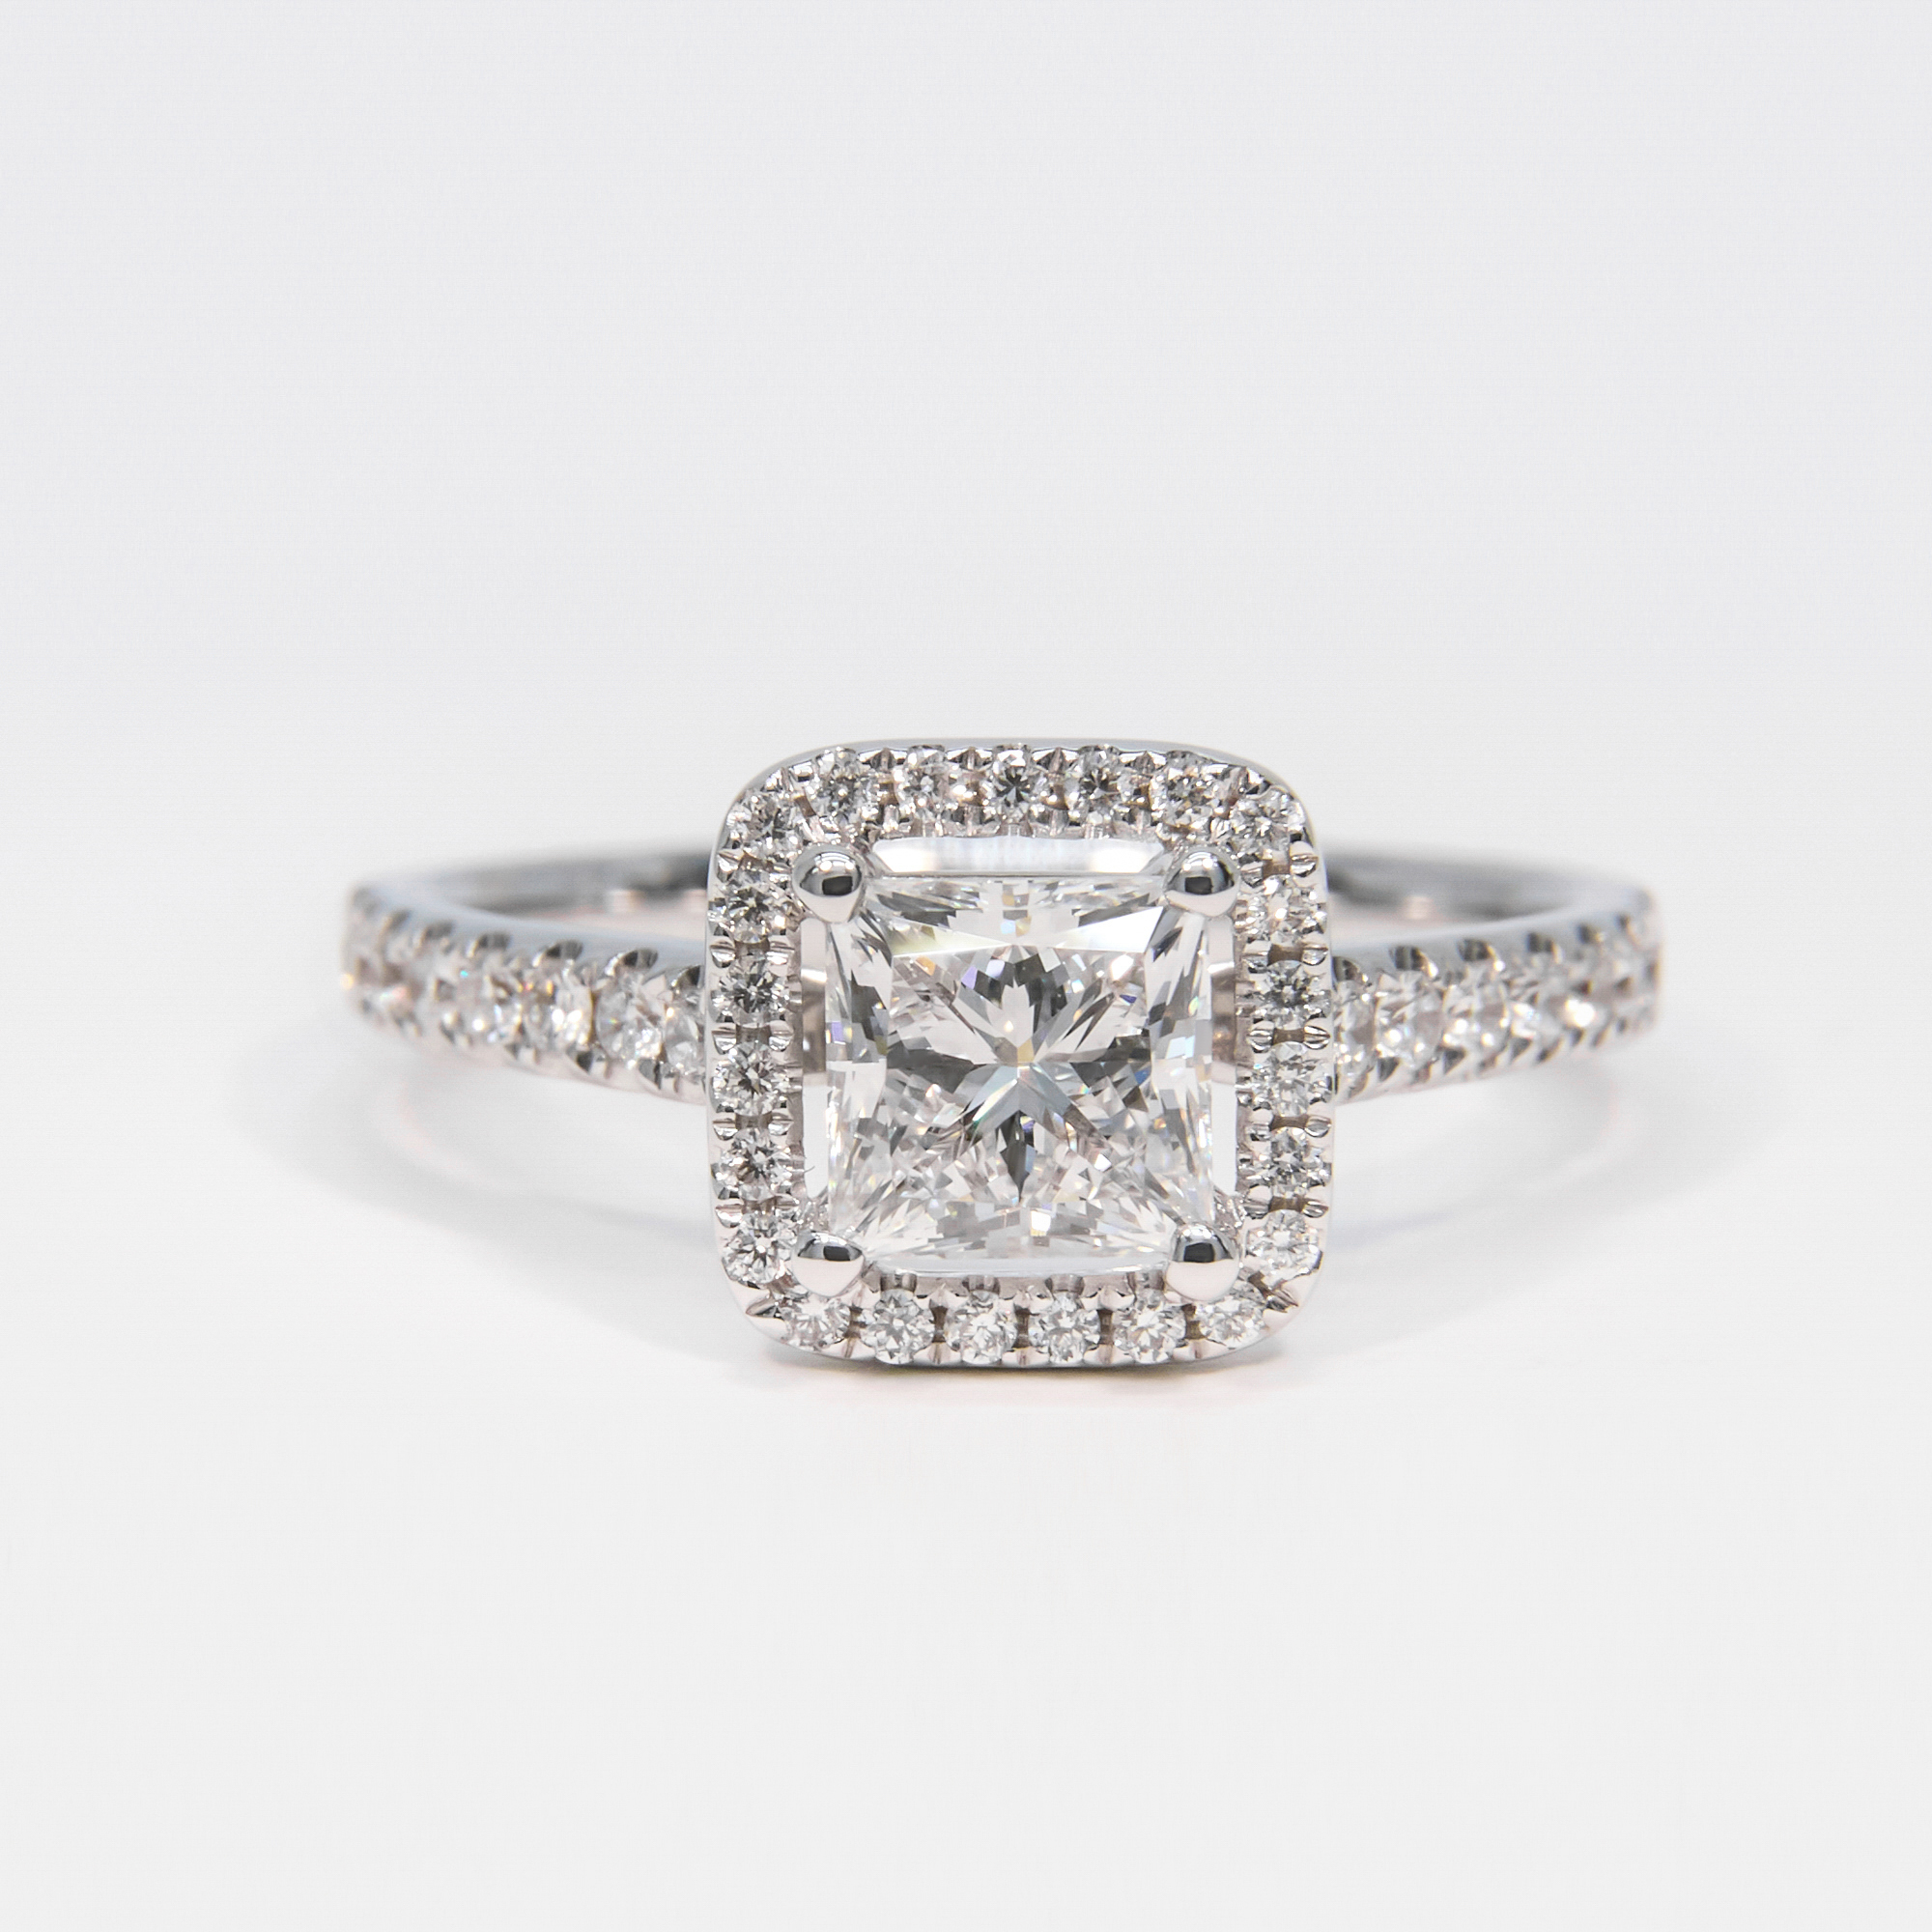 IGI Certified 18K White Gold Princess Lab Grown Diamond Halo Engagement Ring